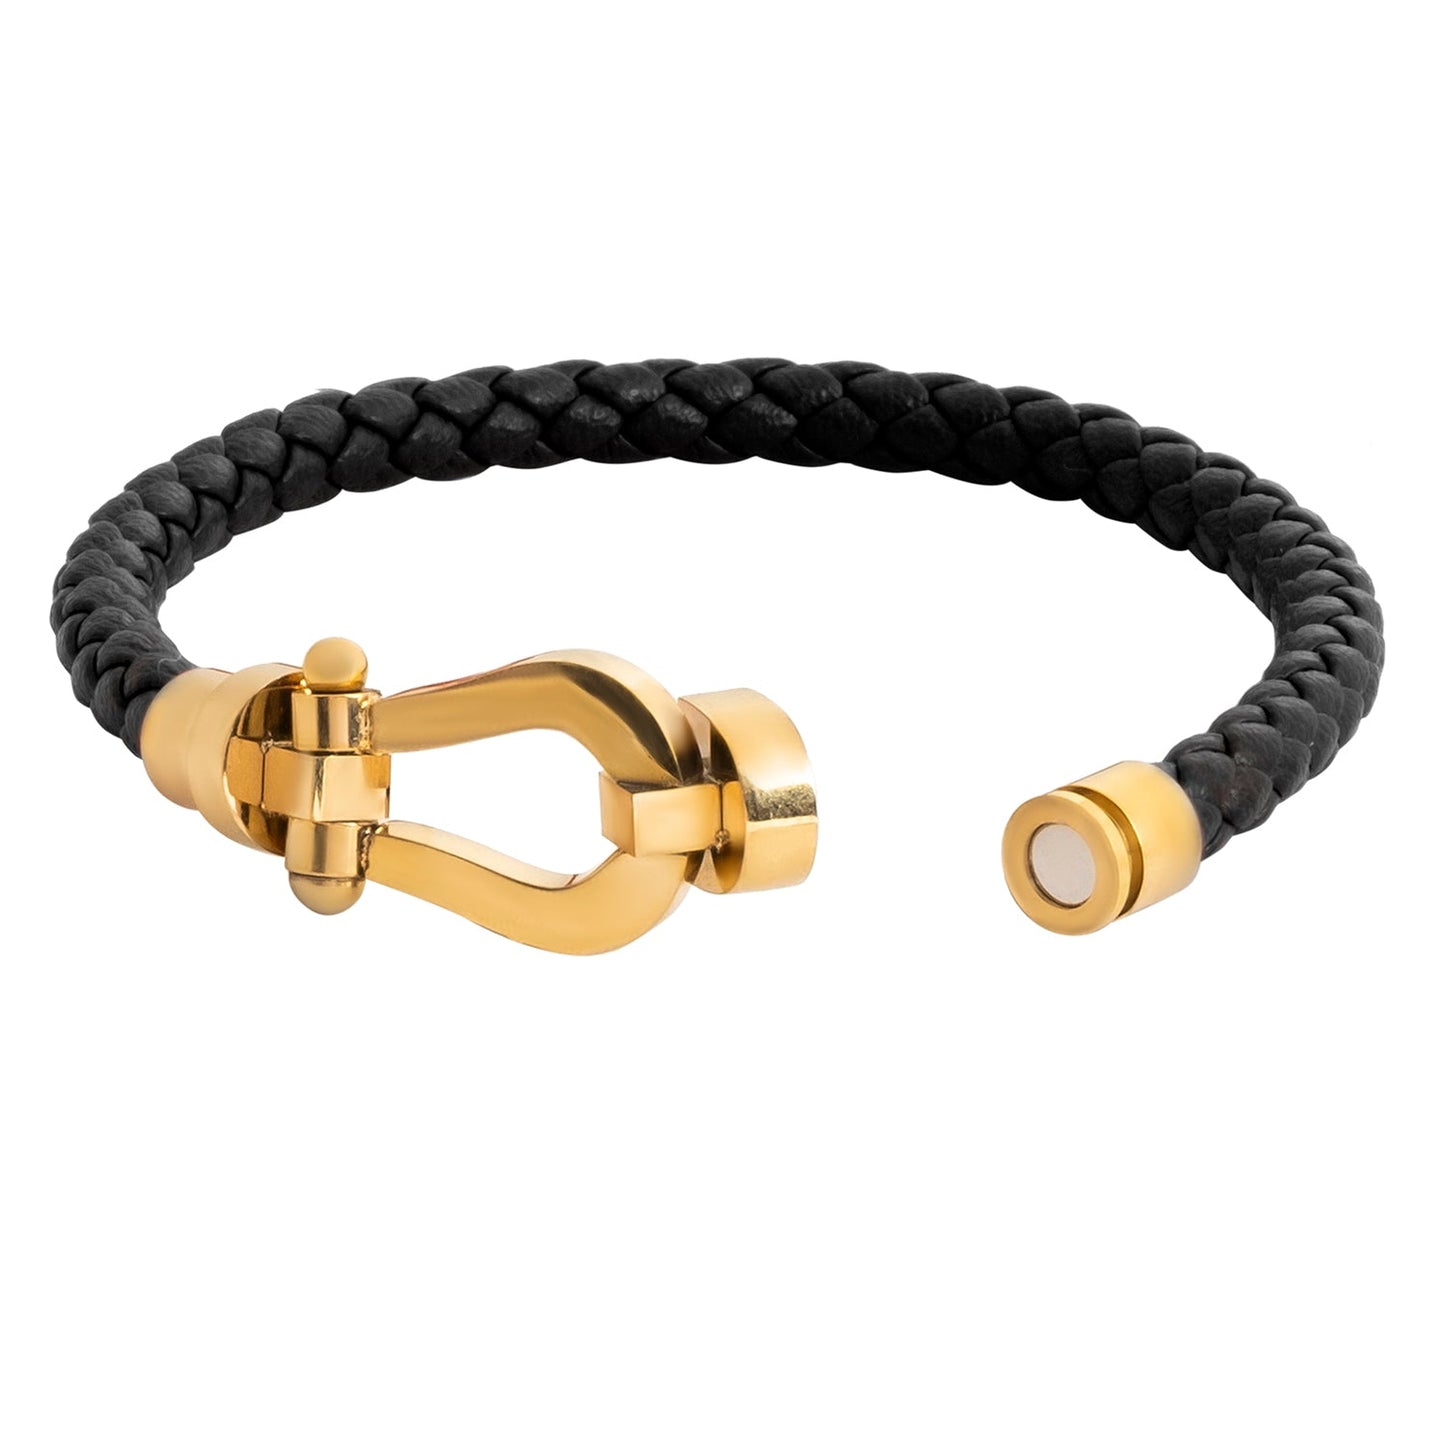 Braided Design Stainless Steel and Leather Bracelet for Men, Boys Gold (SJ_3568_BK)